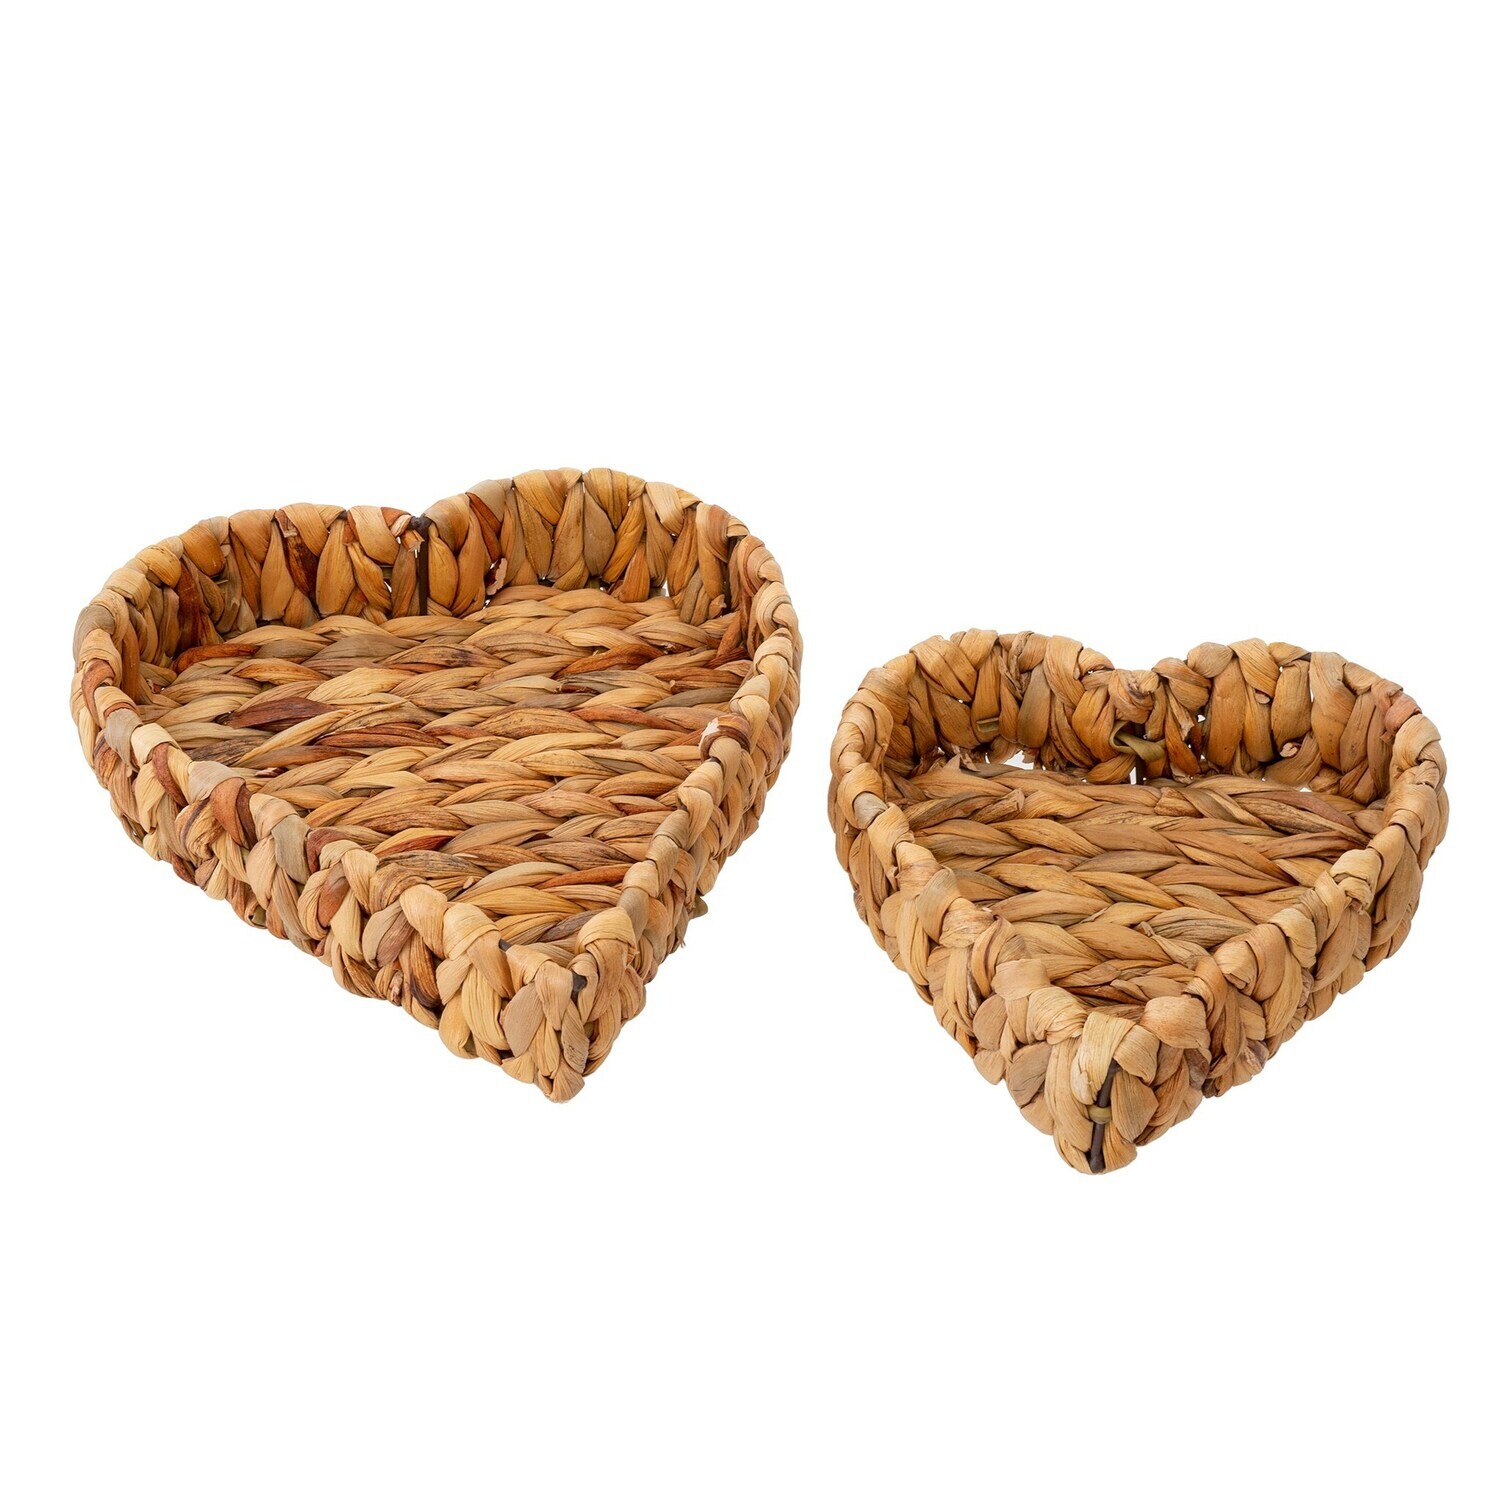 Indaba Heart Baskets Natural